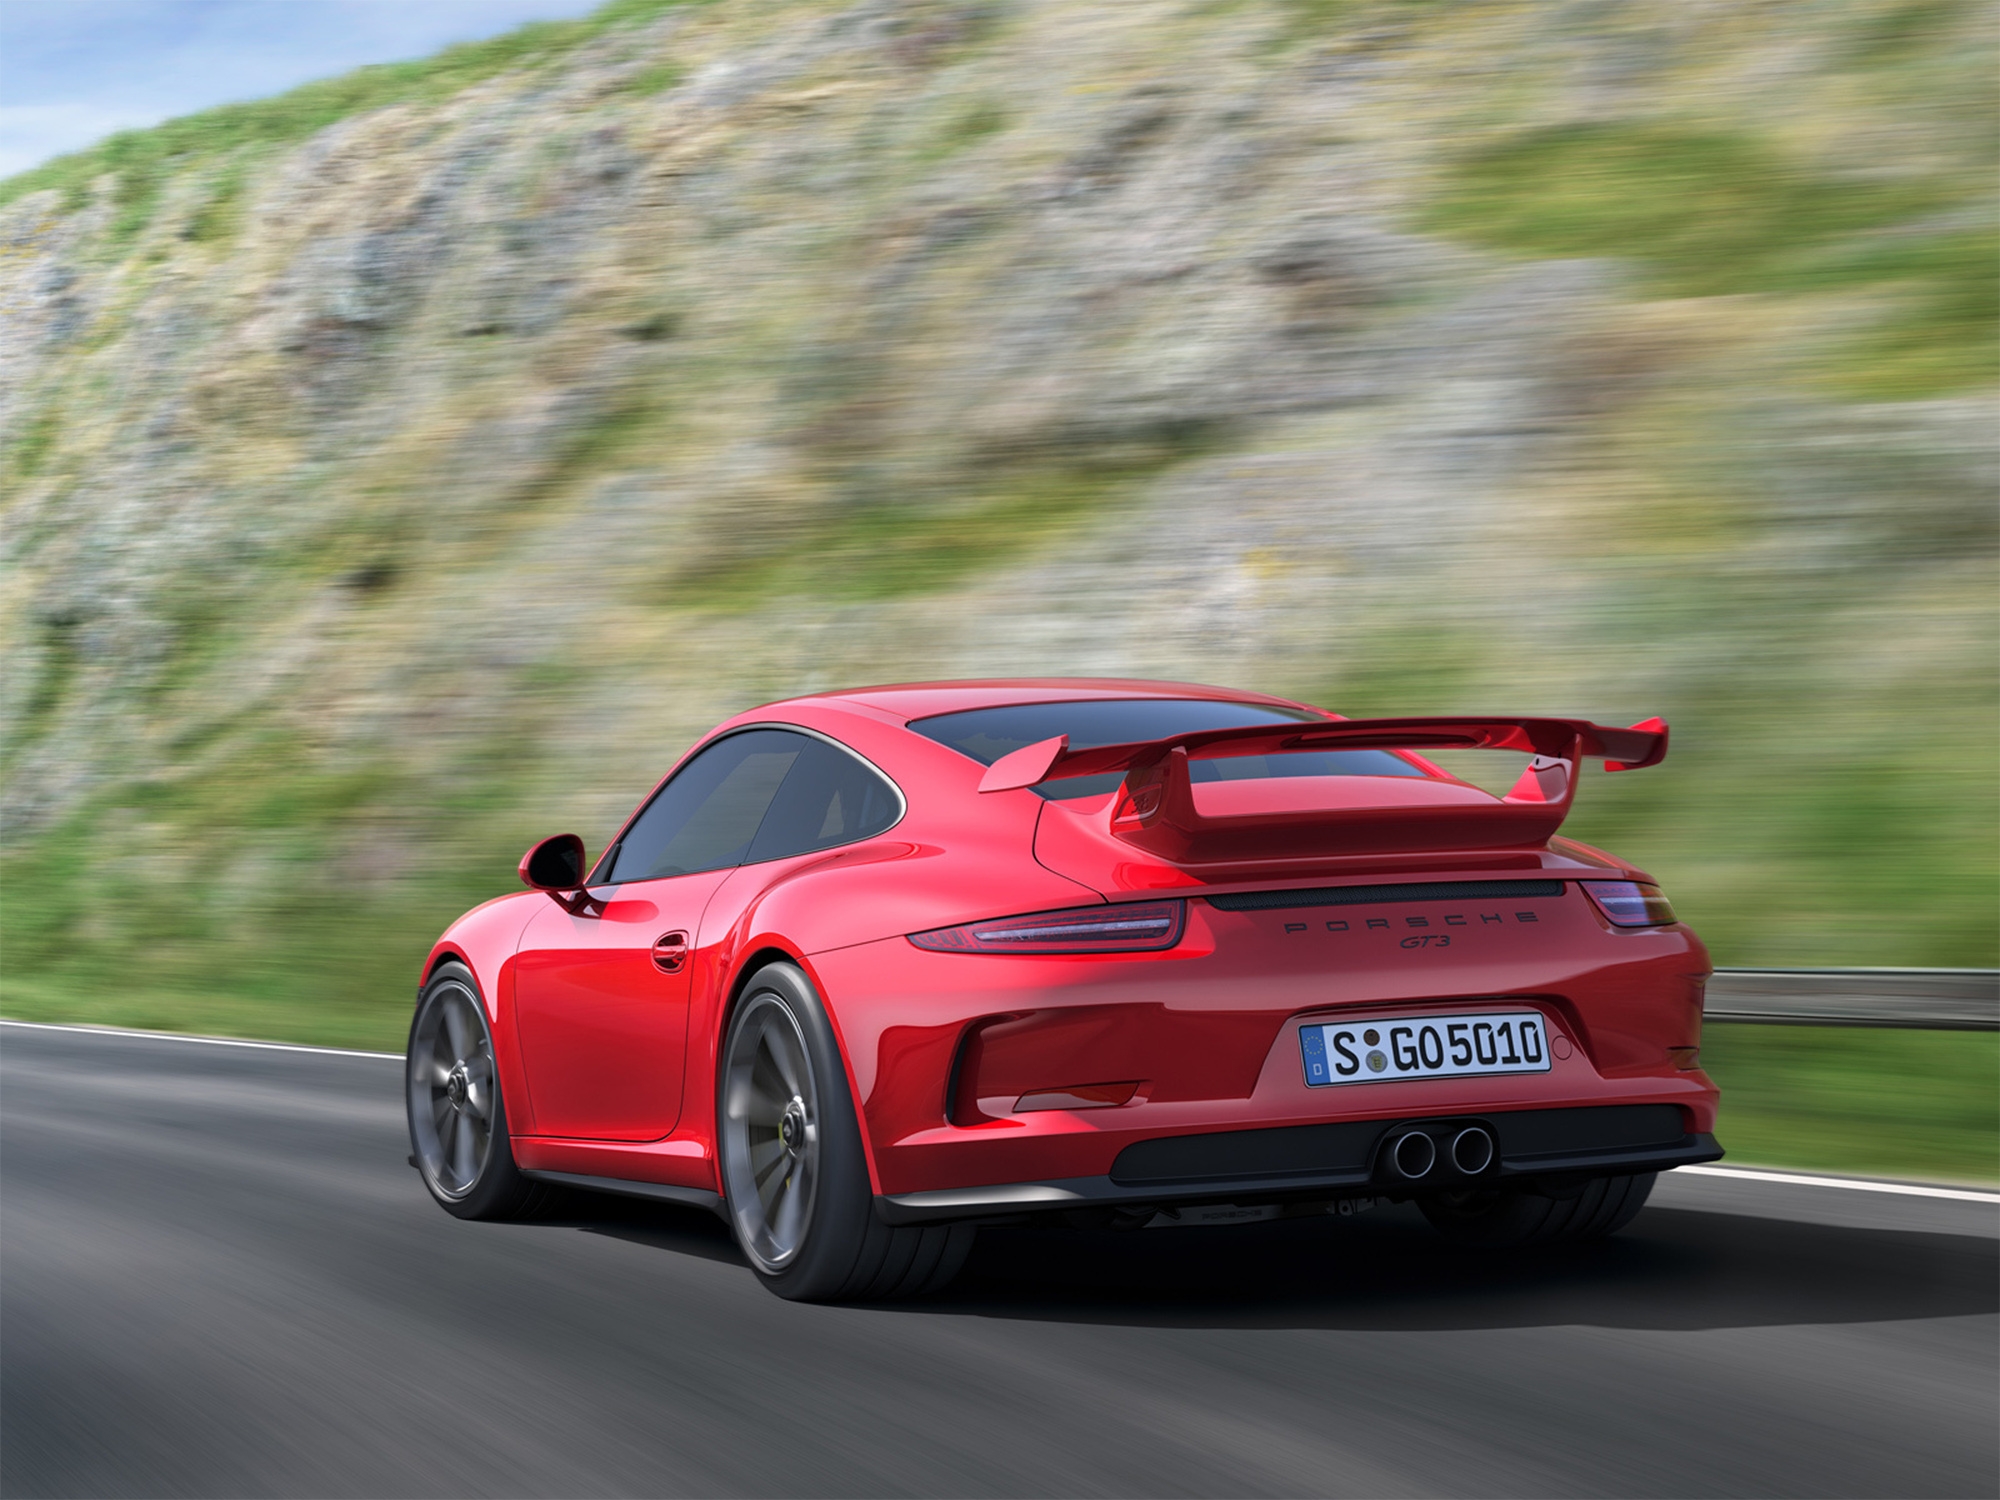 Скачать картинку Porsche 911 Gt3, Автомобили, Тачки (Cars), Красный, Машина, Скорость, Машины в телефон бесплатно.